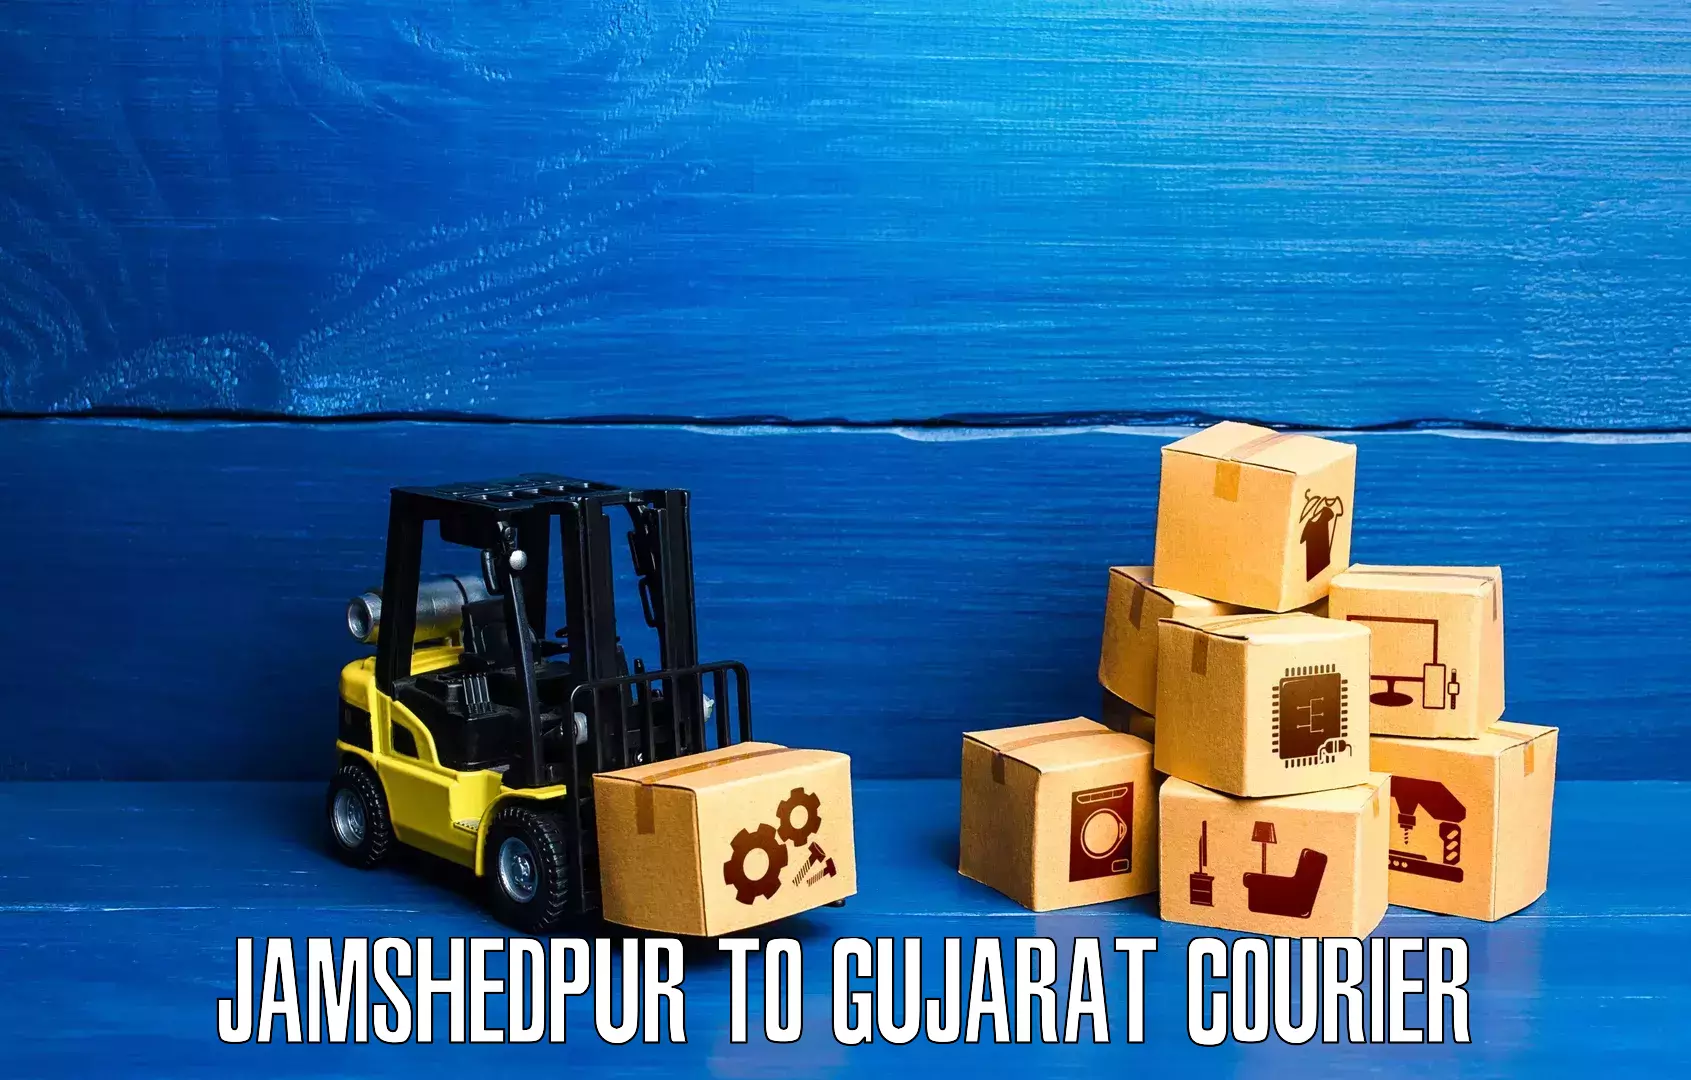 Cash on delivery service Jamshedpur to Visavadar